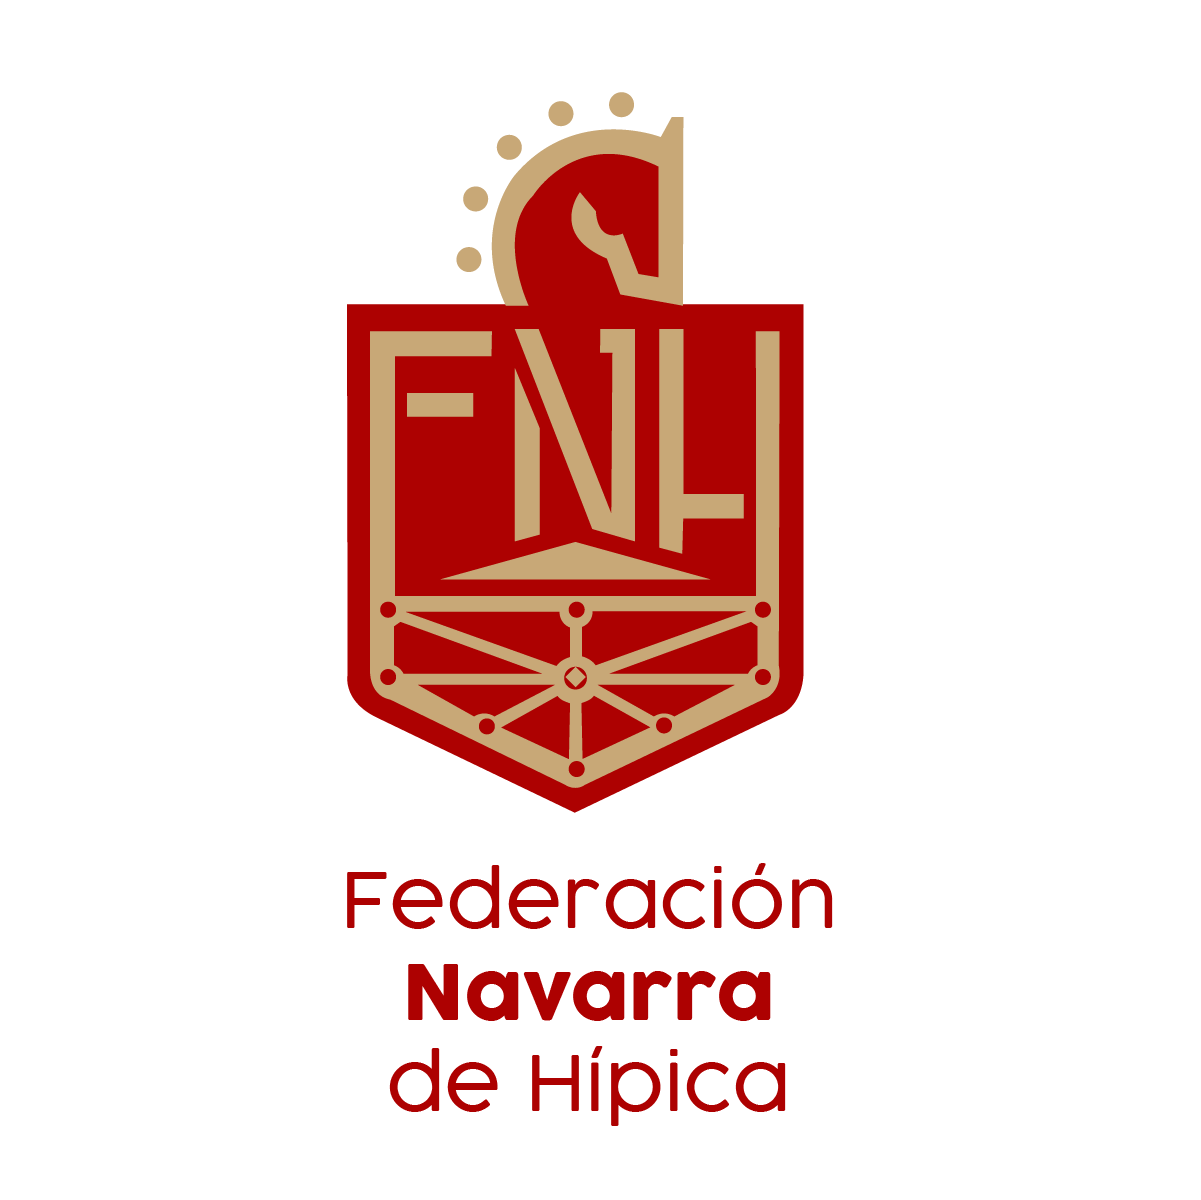 Convocado curso de Técnico Deportivo de Hípica nivel III en La Rioja